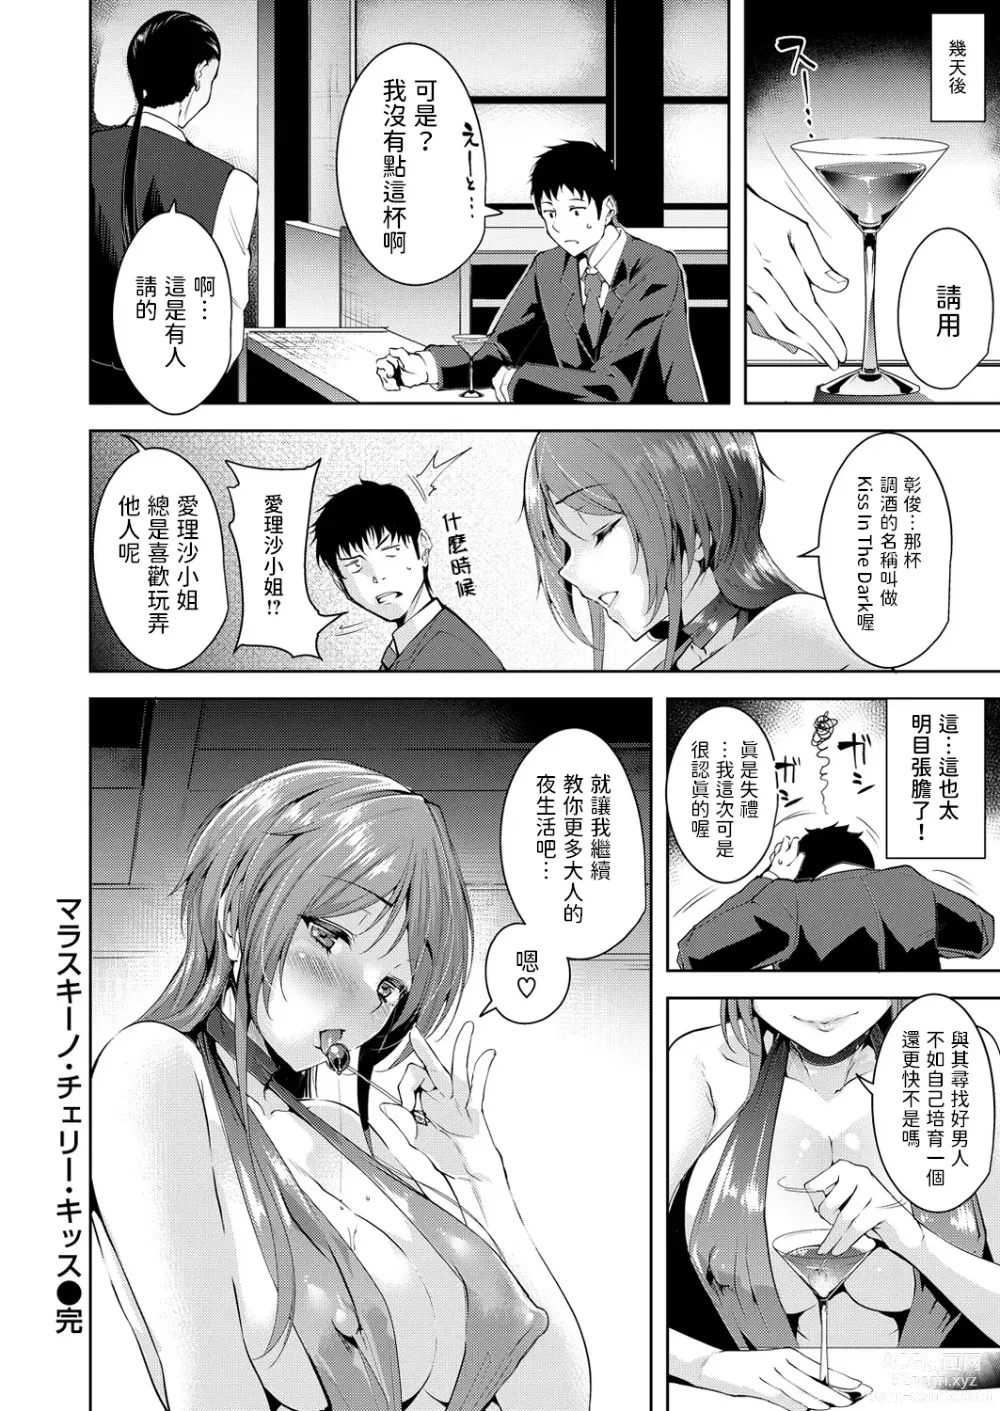 Page 18 of manga Maraschino Cherry Kiss